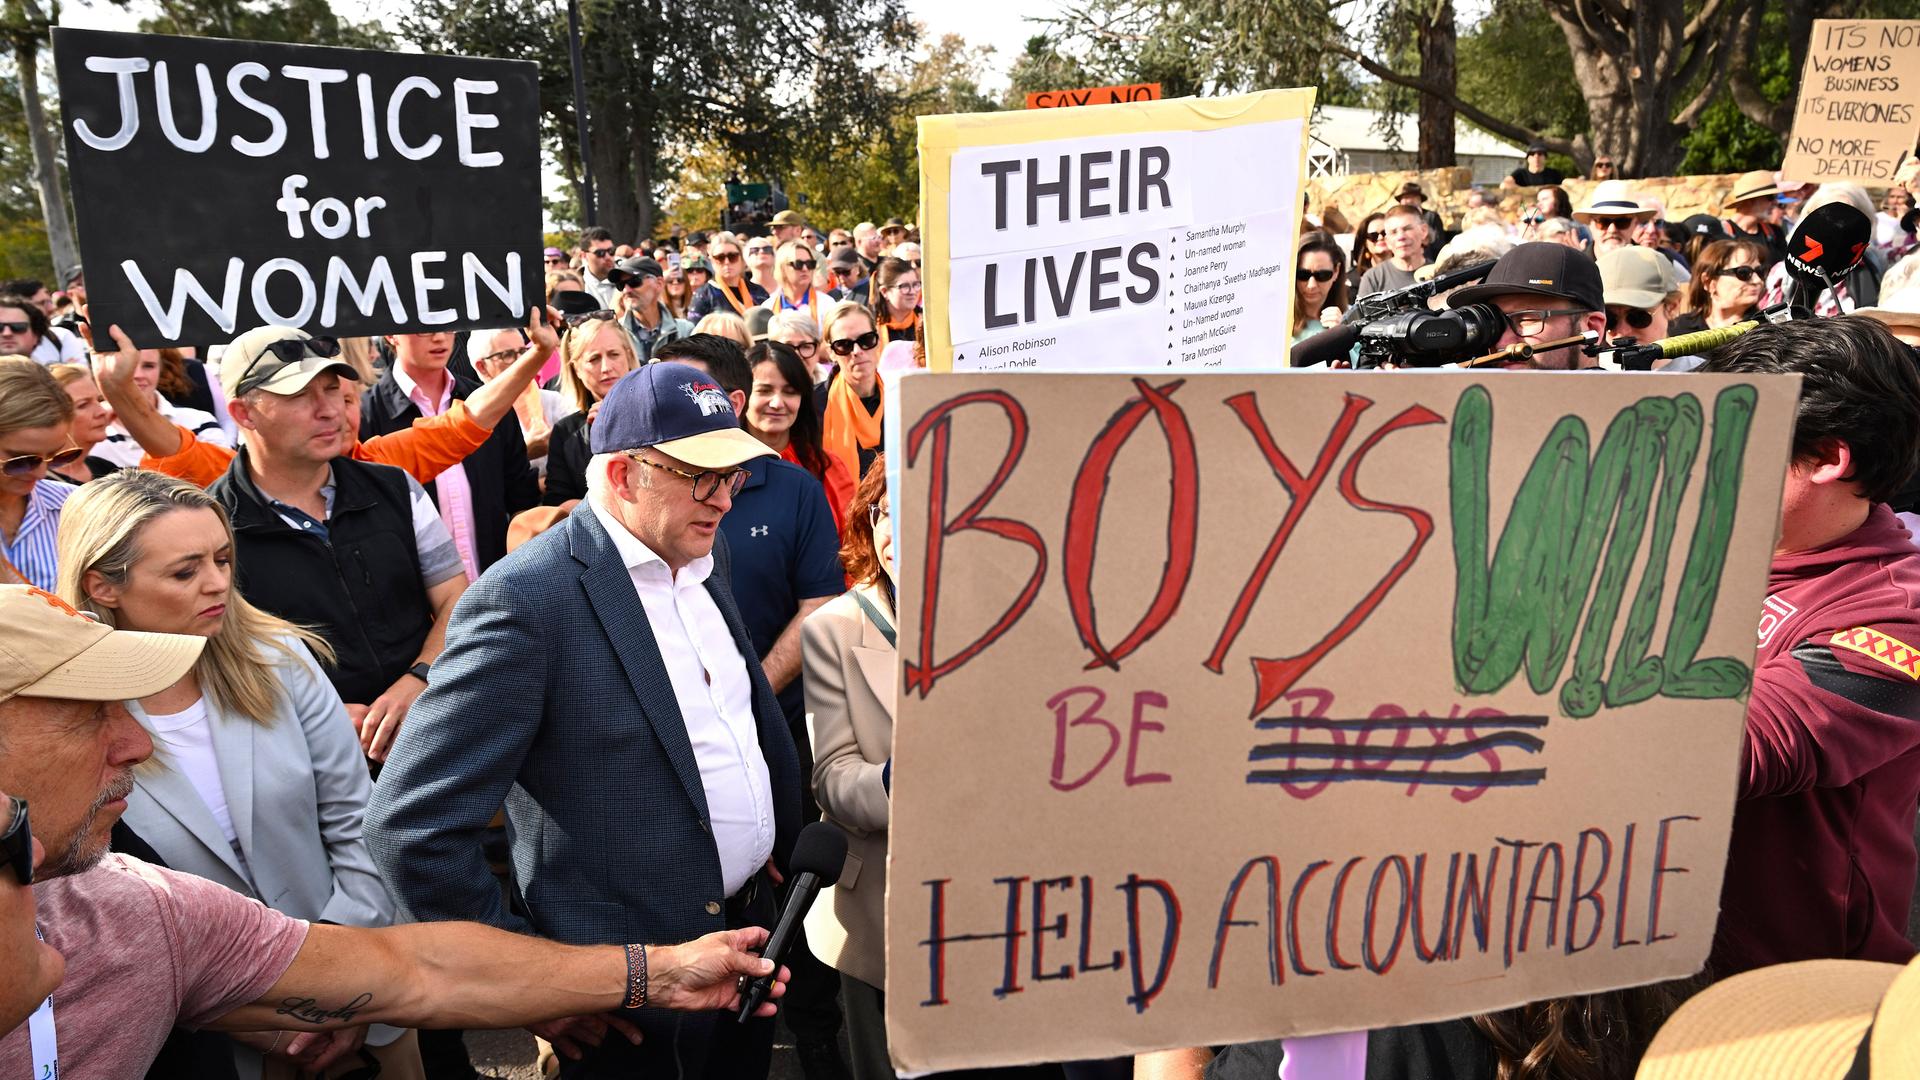 Der australische Premierminister Anthony Albanese nimmt an einer Demonstation gegen Gewalt an Frauen teil. Um ihn herum sind viele Menschen mit Plakaten.